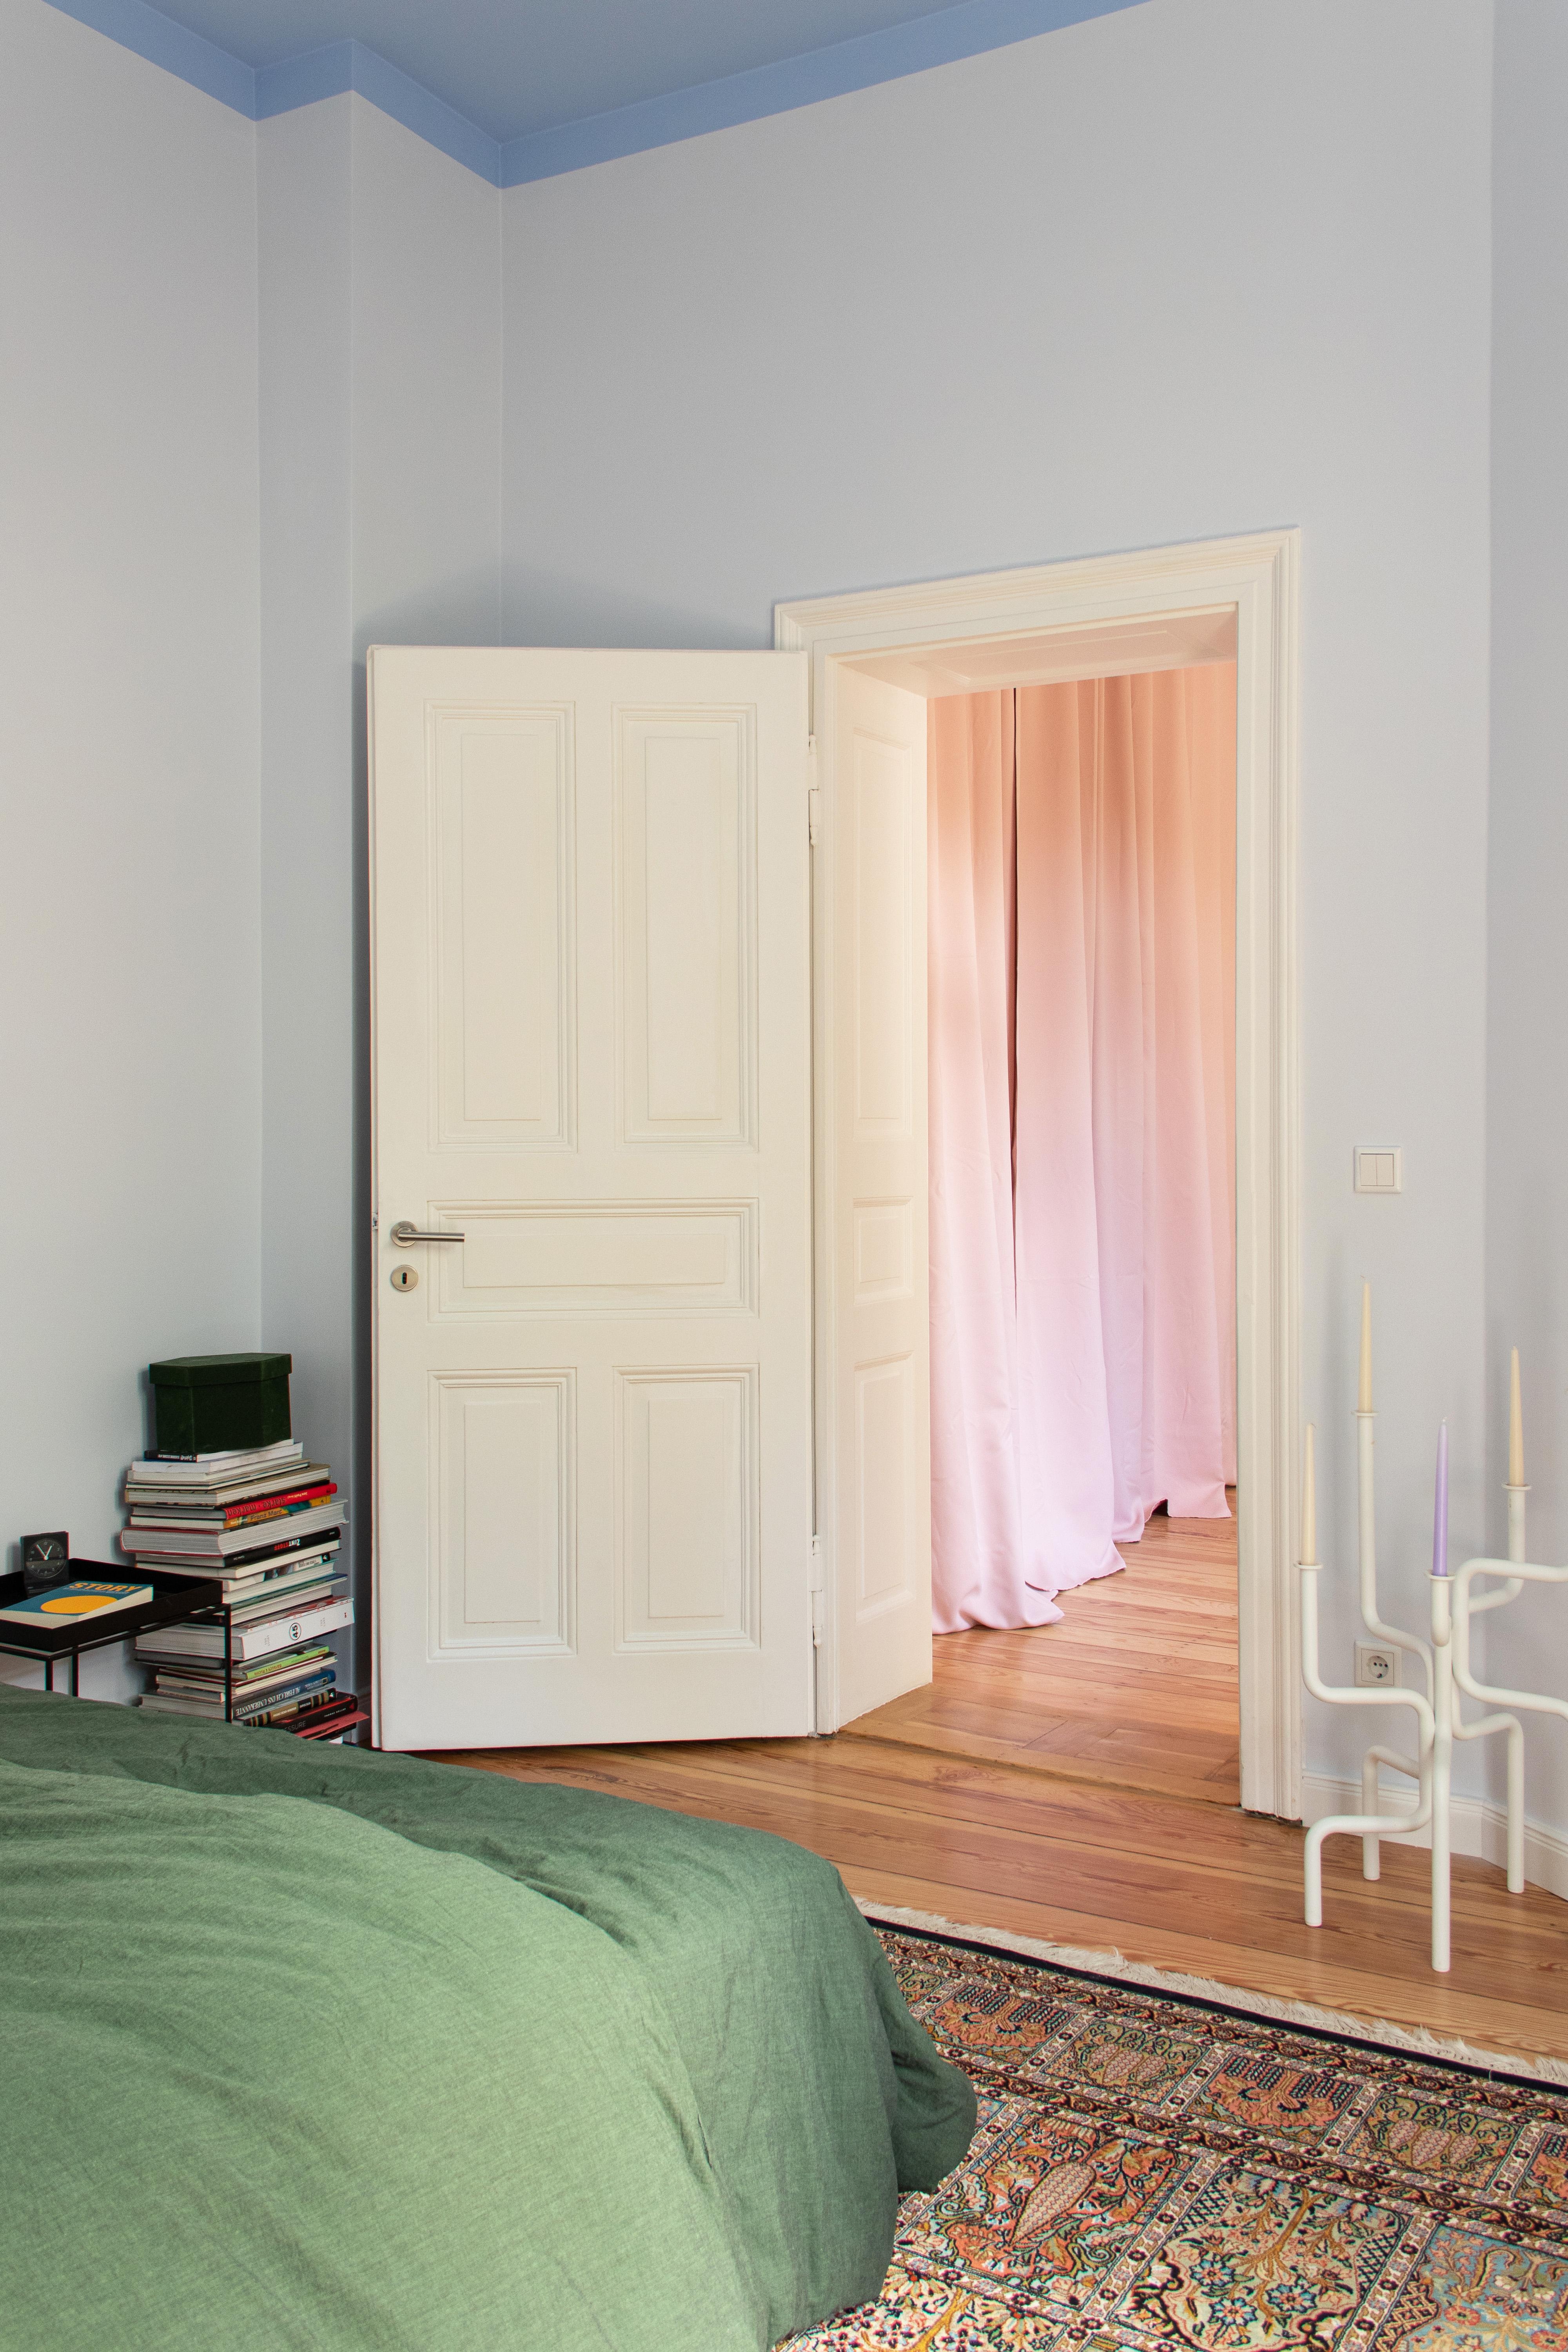 #Schlafzimmer #Bett #Wandfarbe #Vorhang #Rosa #Grün #Hellblau #Decke #Altbau #Couchliebt #Couchstyle